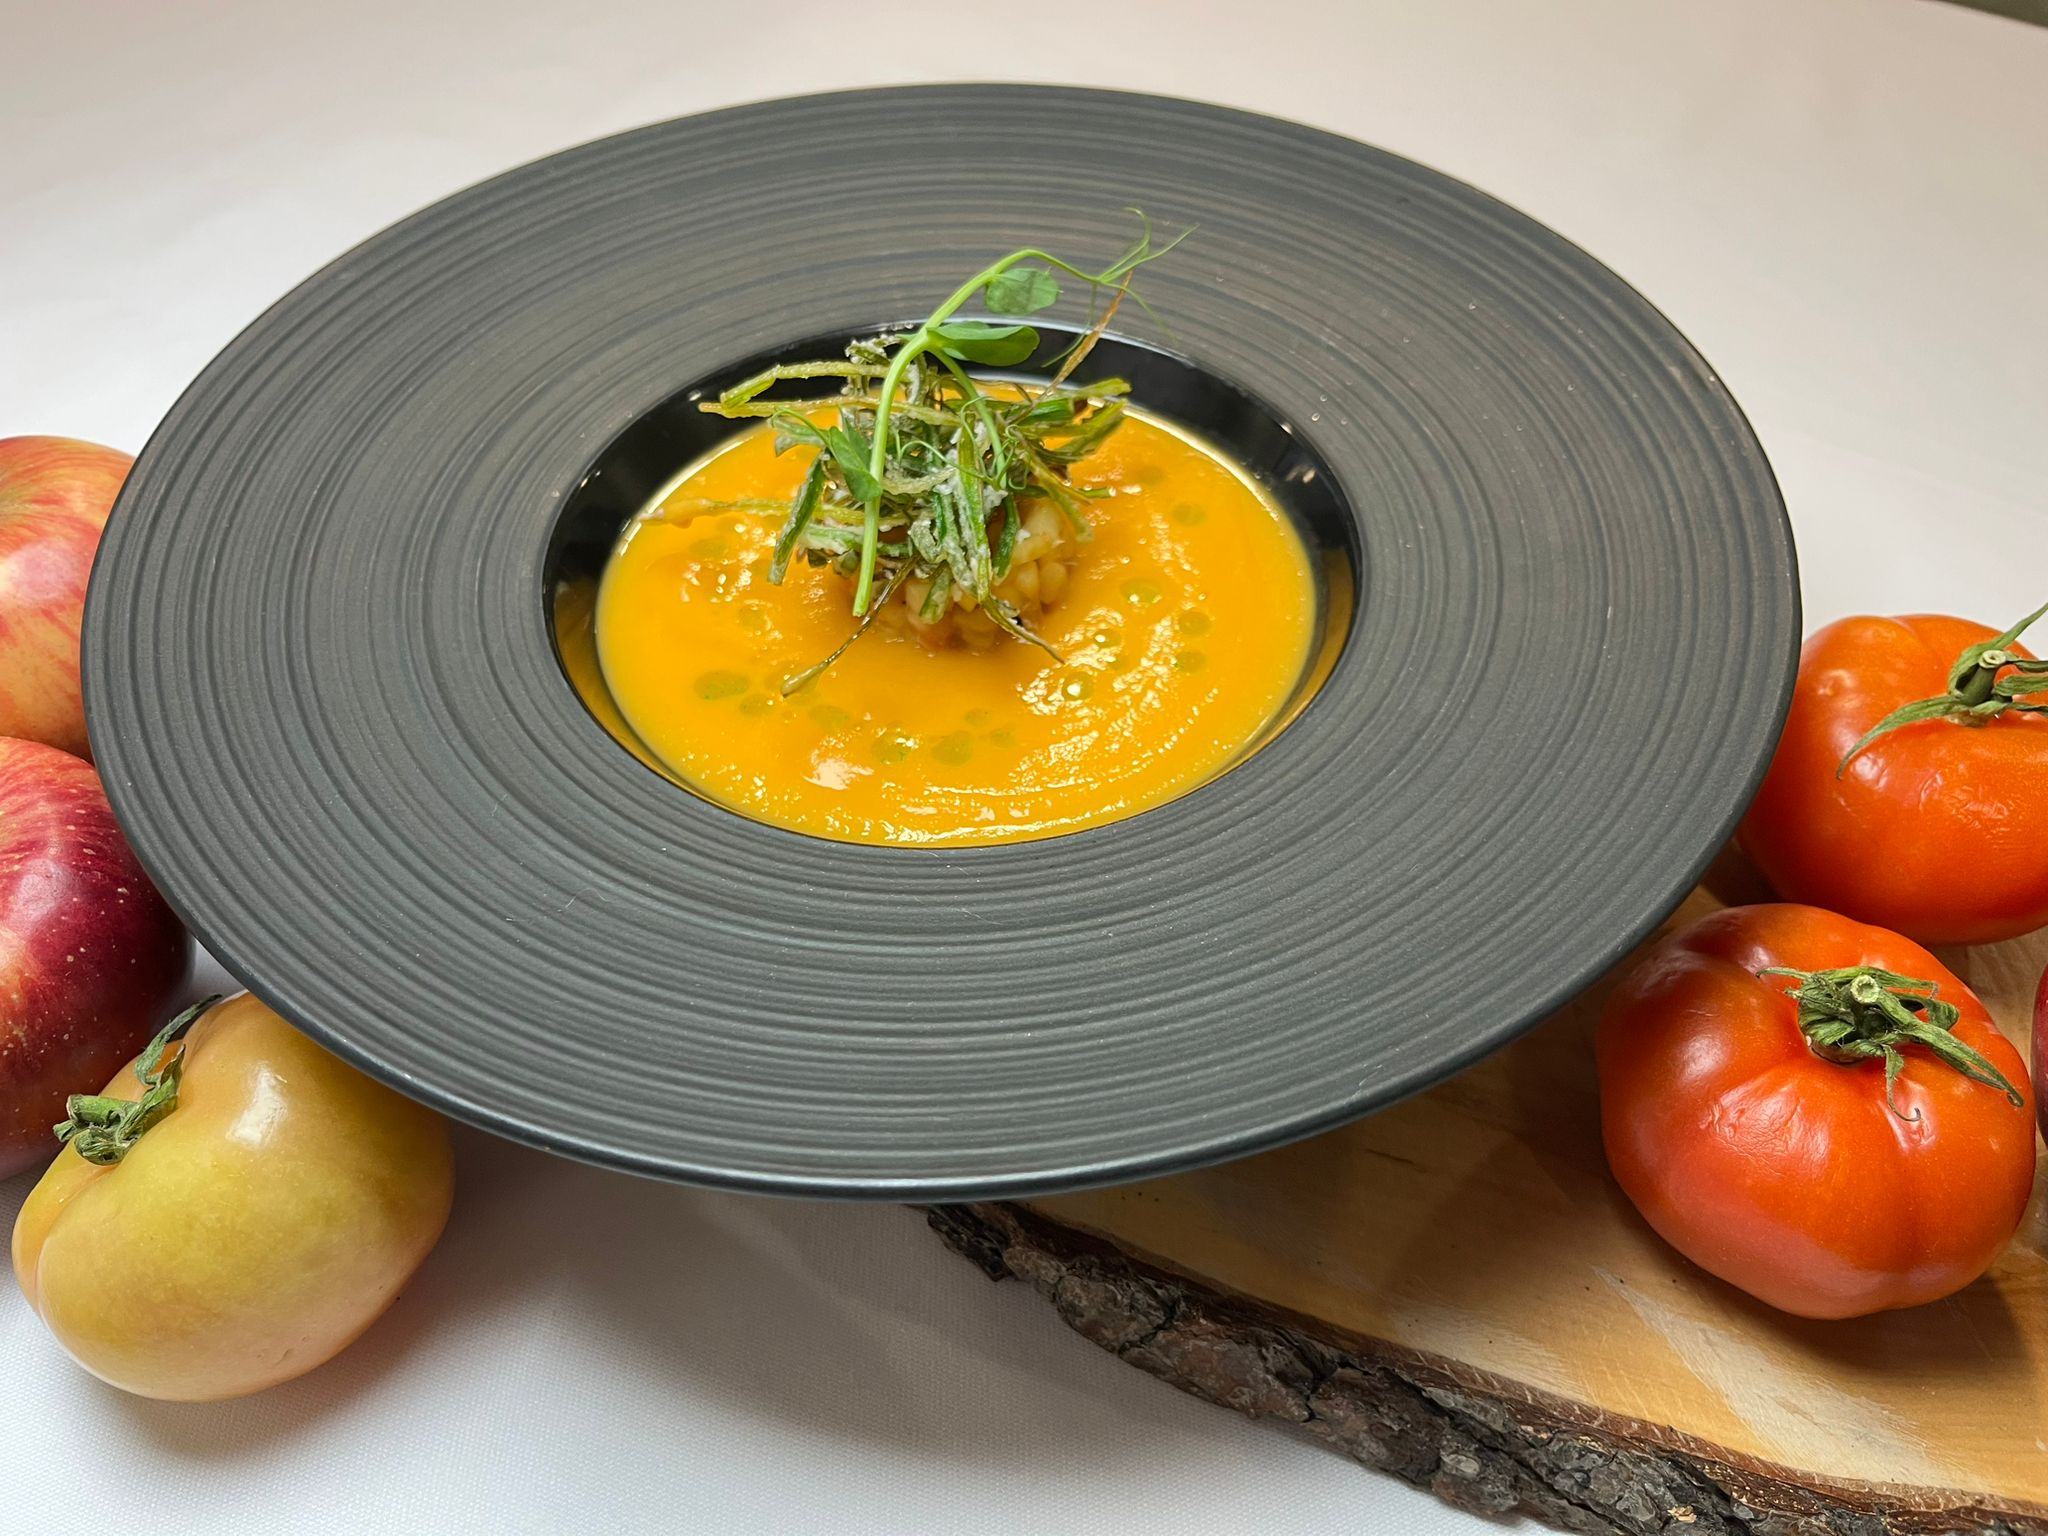 Sopa de Tomate e Maçã com Palha de Alho francês - II